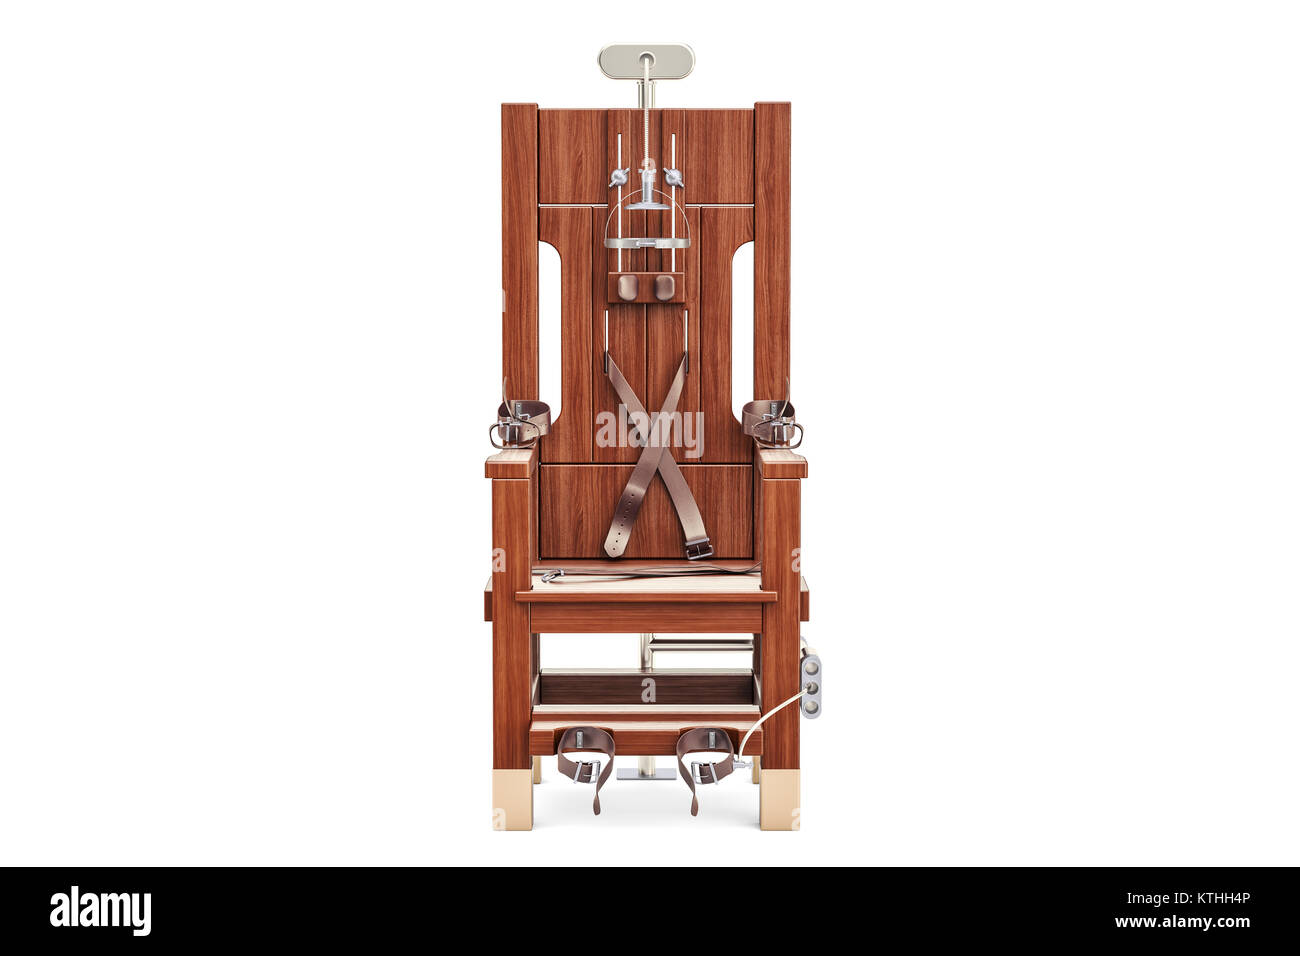 Den elektrischen Stuhl, 3D-Rendering auf weißem Hintergrund Stockfoto